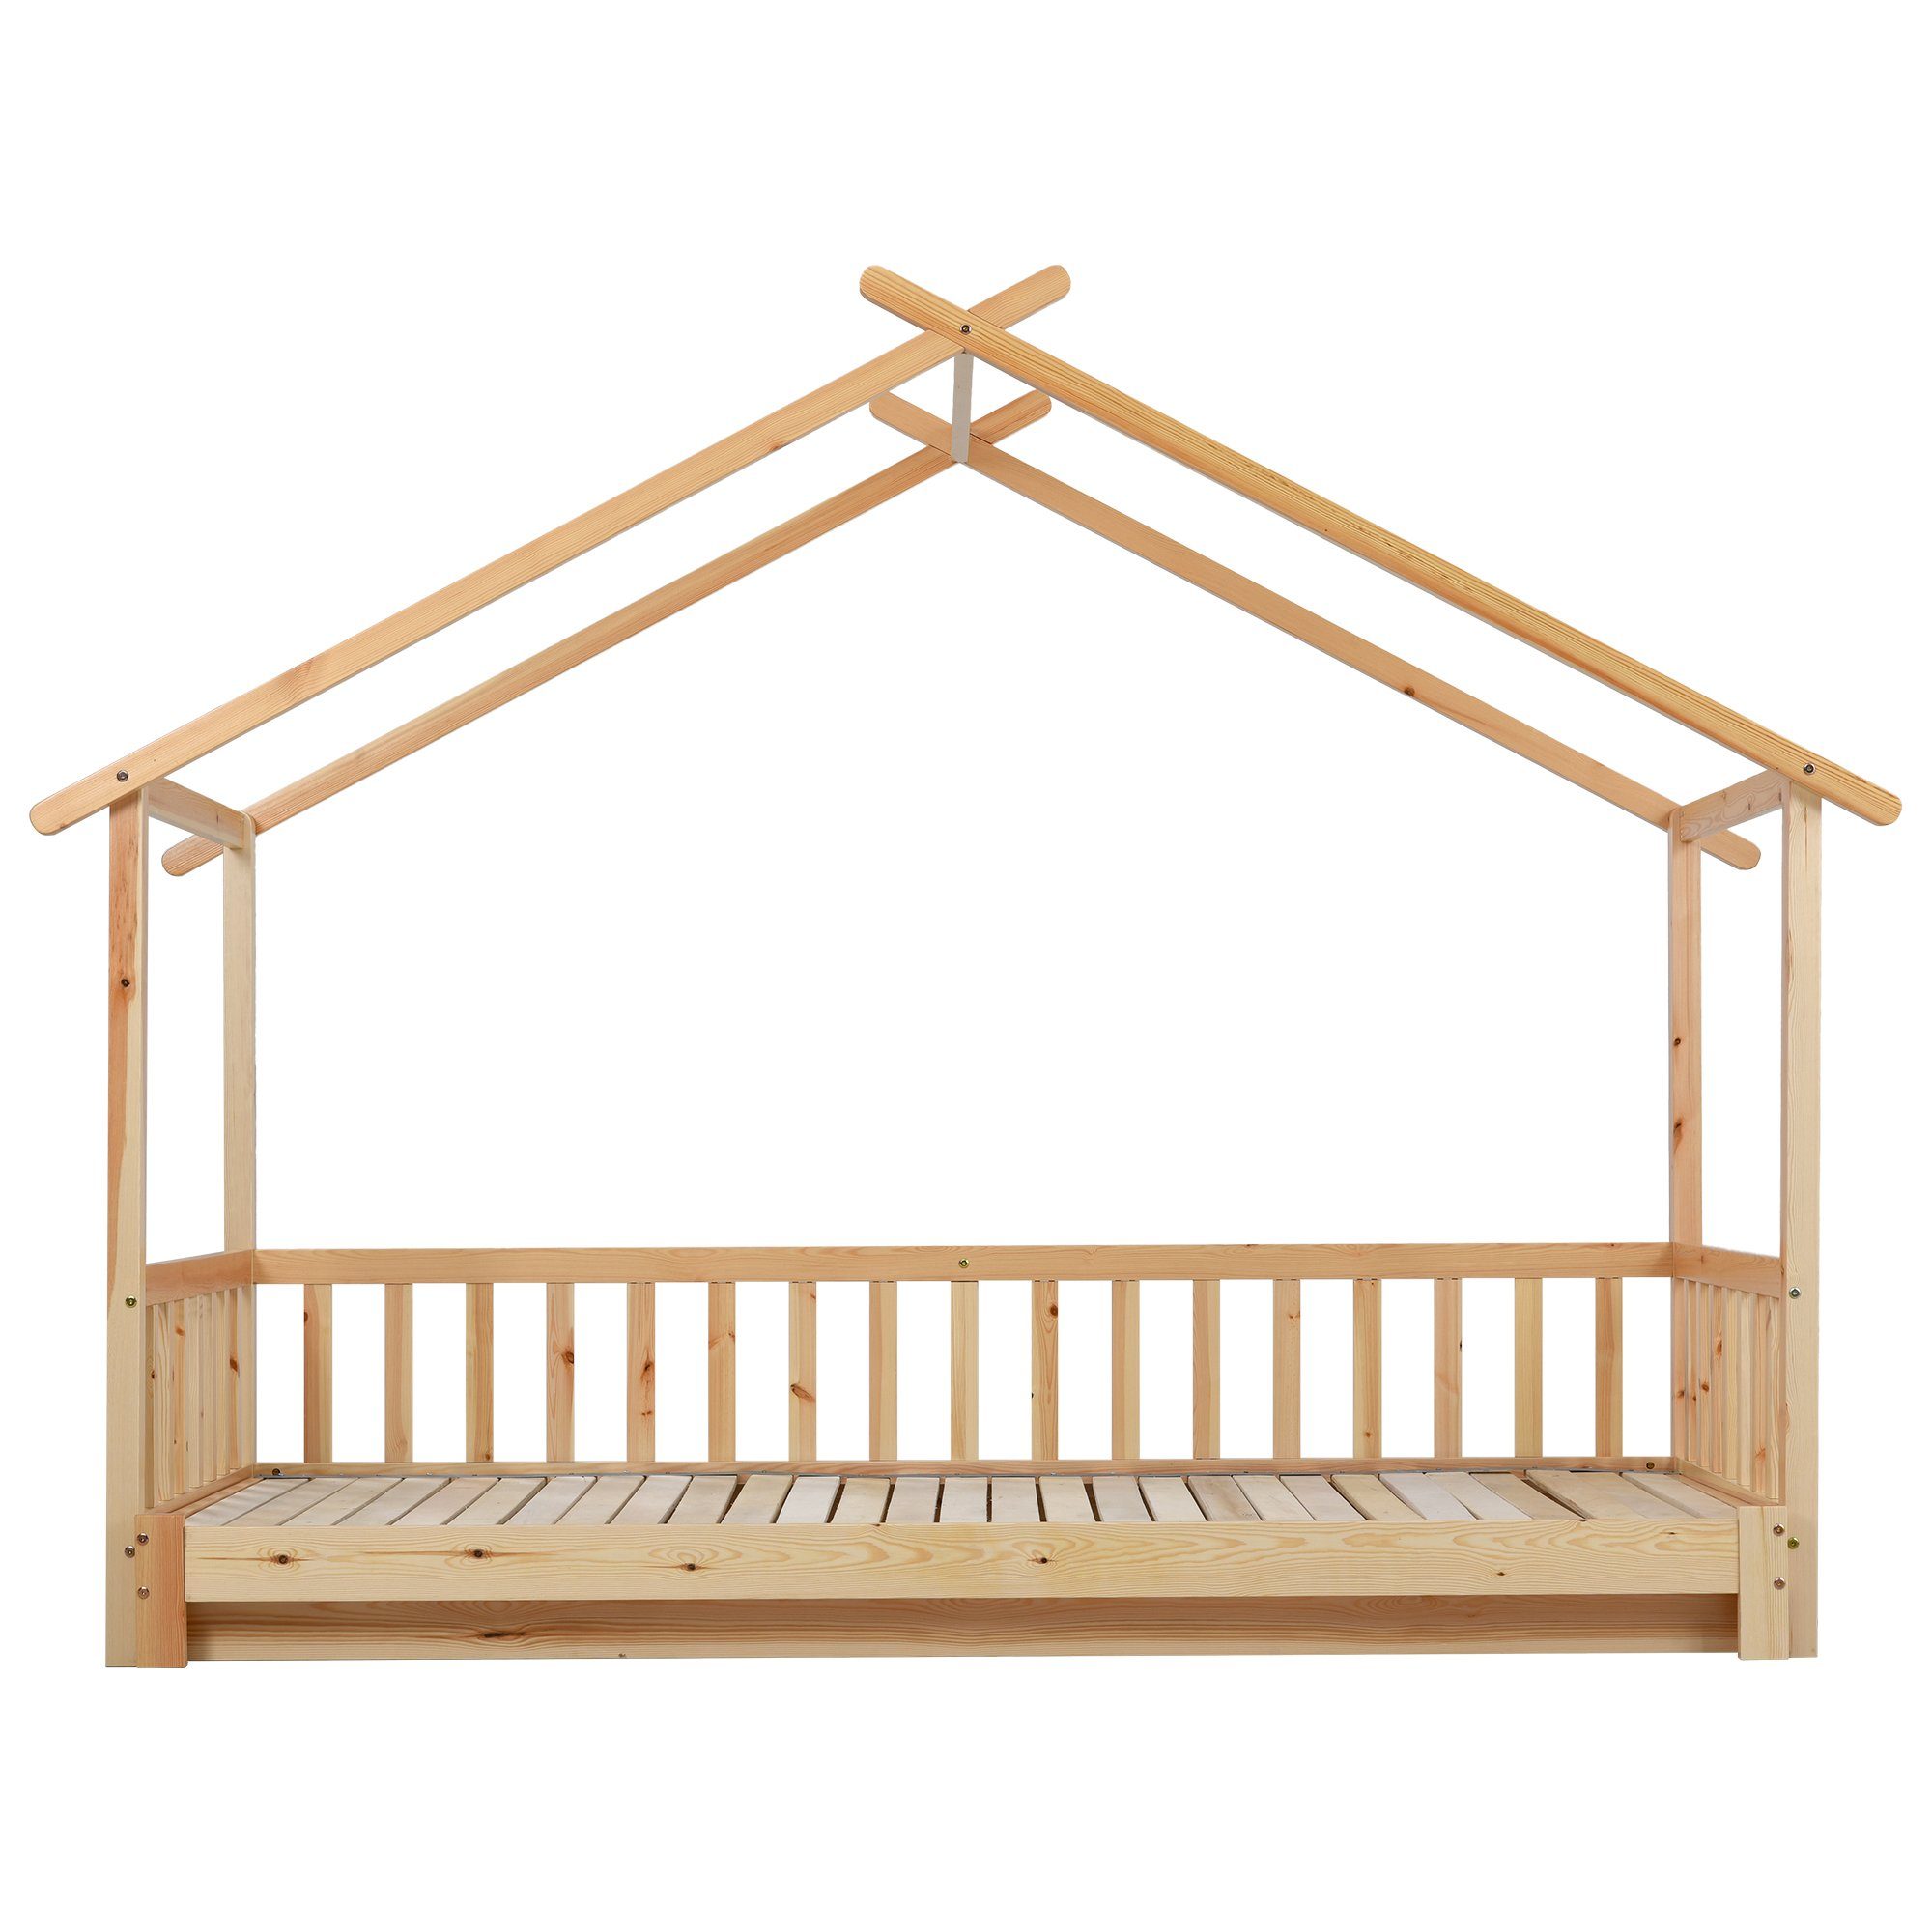 HAUSS SPLOE Bett Hausbett Kinderbett Baumhausbett keine enthält Holzbett (Das Erweiterbares Matratze), Matratze Bettrahmen Bett Ohne